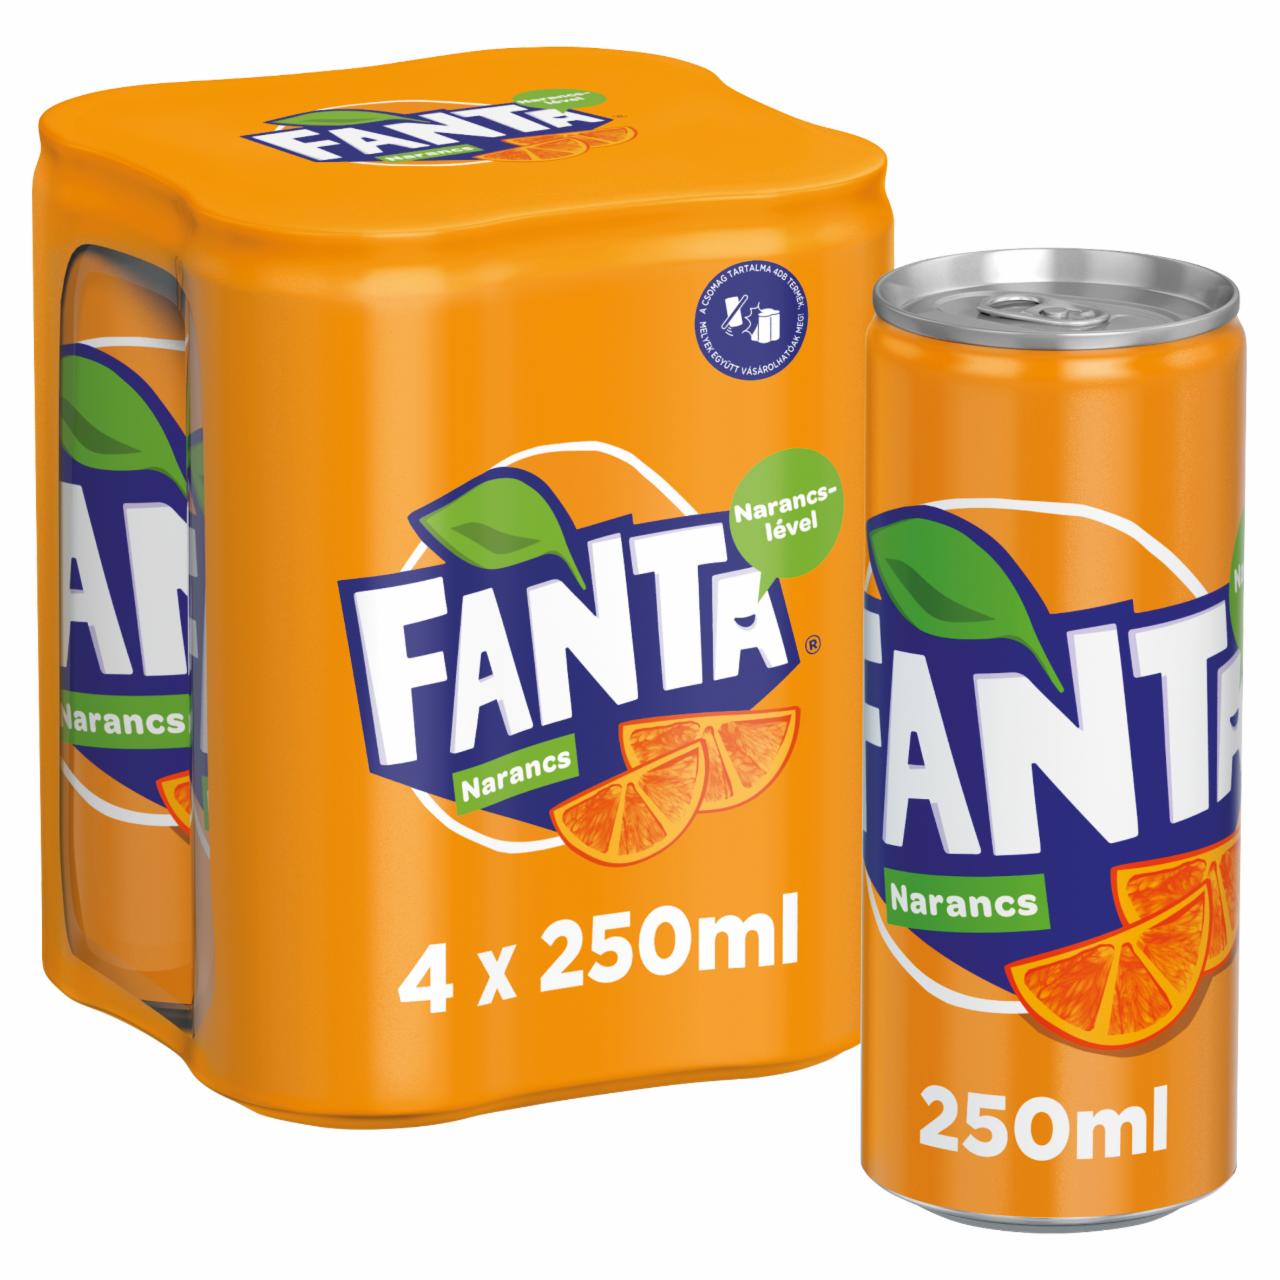 Képek - Fanta narancs szénsavas üdítőital cukorral és édesítőszerekkel 4 x 250 ml